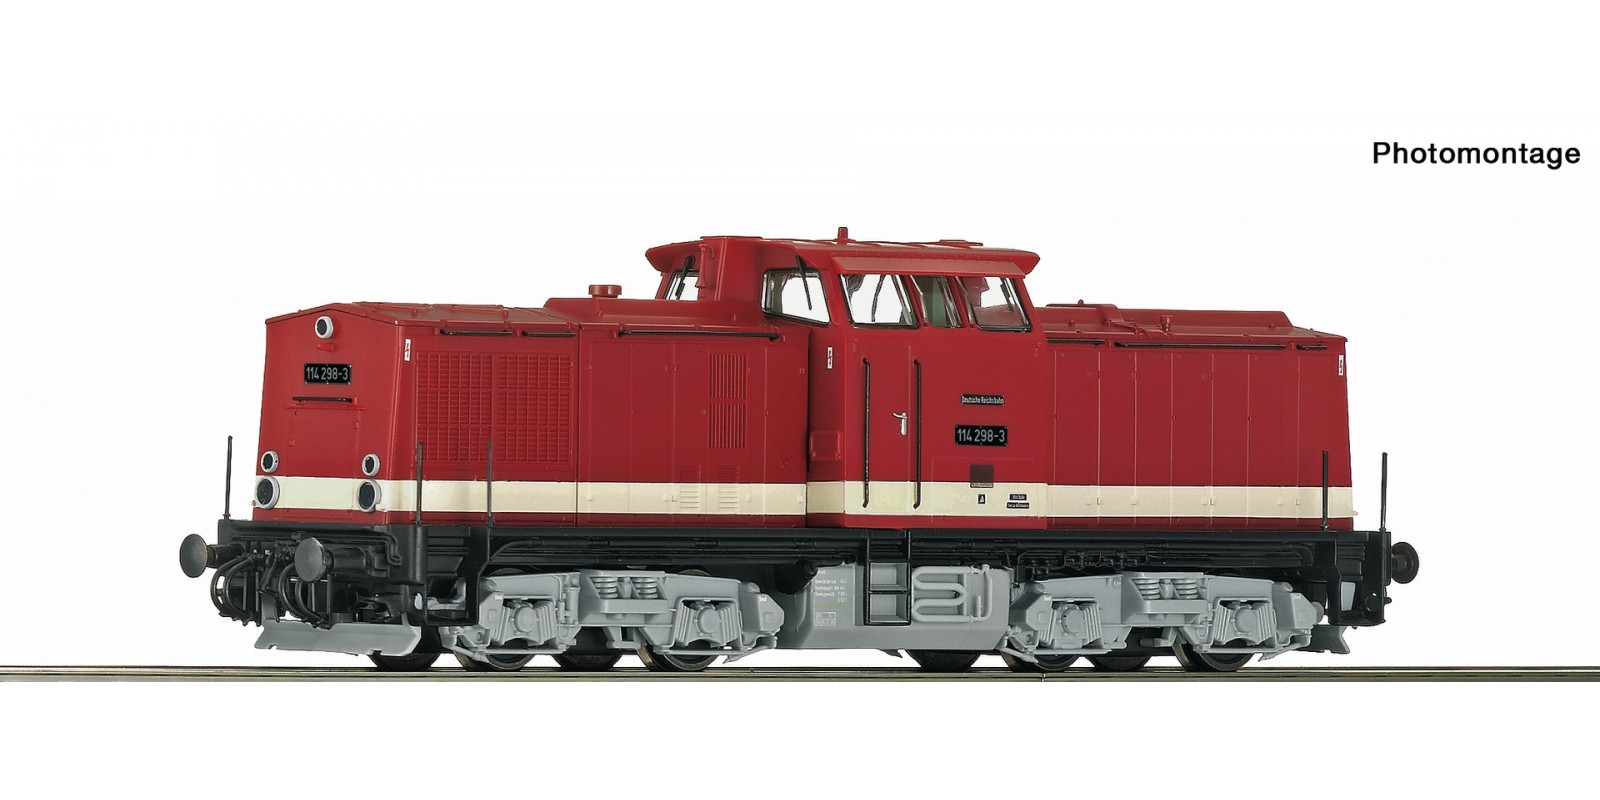 RO78812 - Diesel locomotive 114 298-3, DR